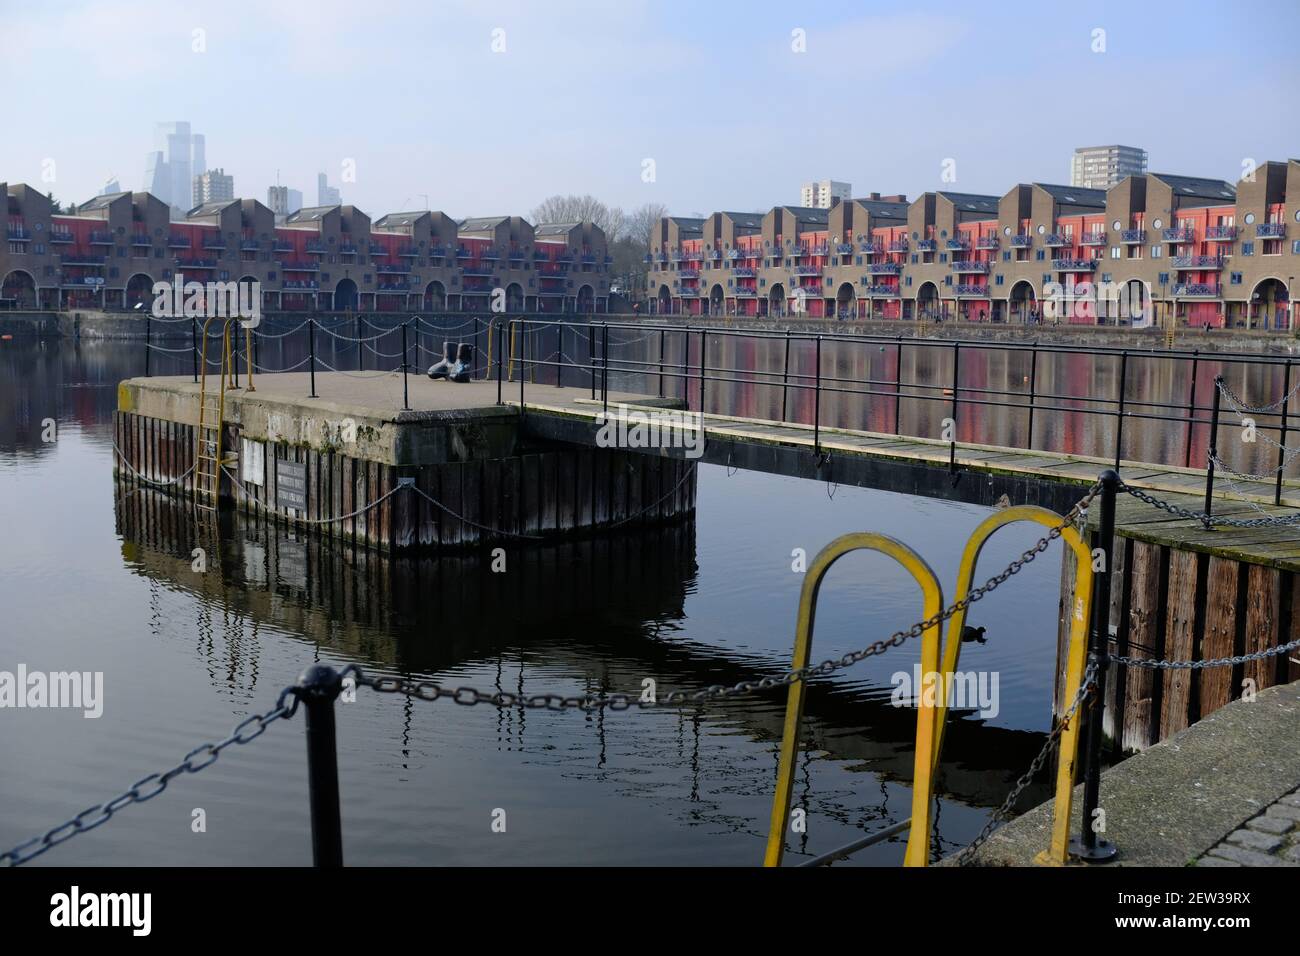 LONDRA - 2 MARZO 2021: L'alloggio Shadwell Basin e il molo di svago a Wapping. Foto Stock